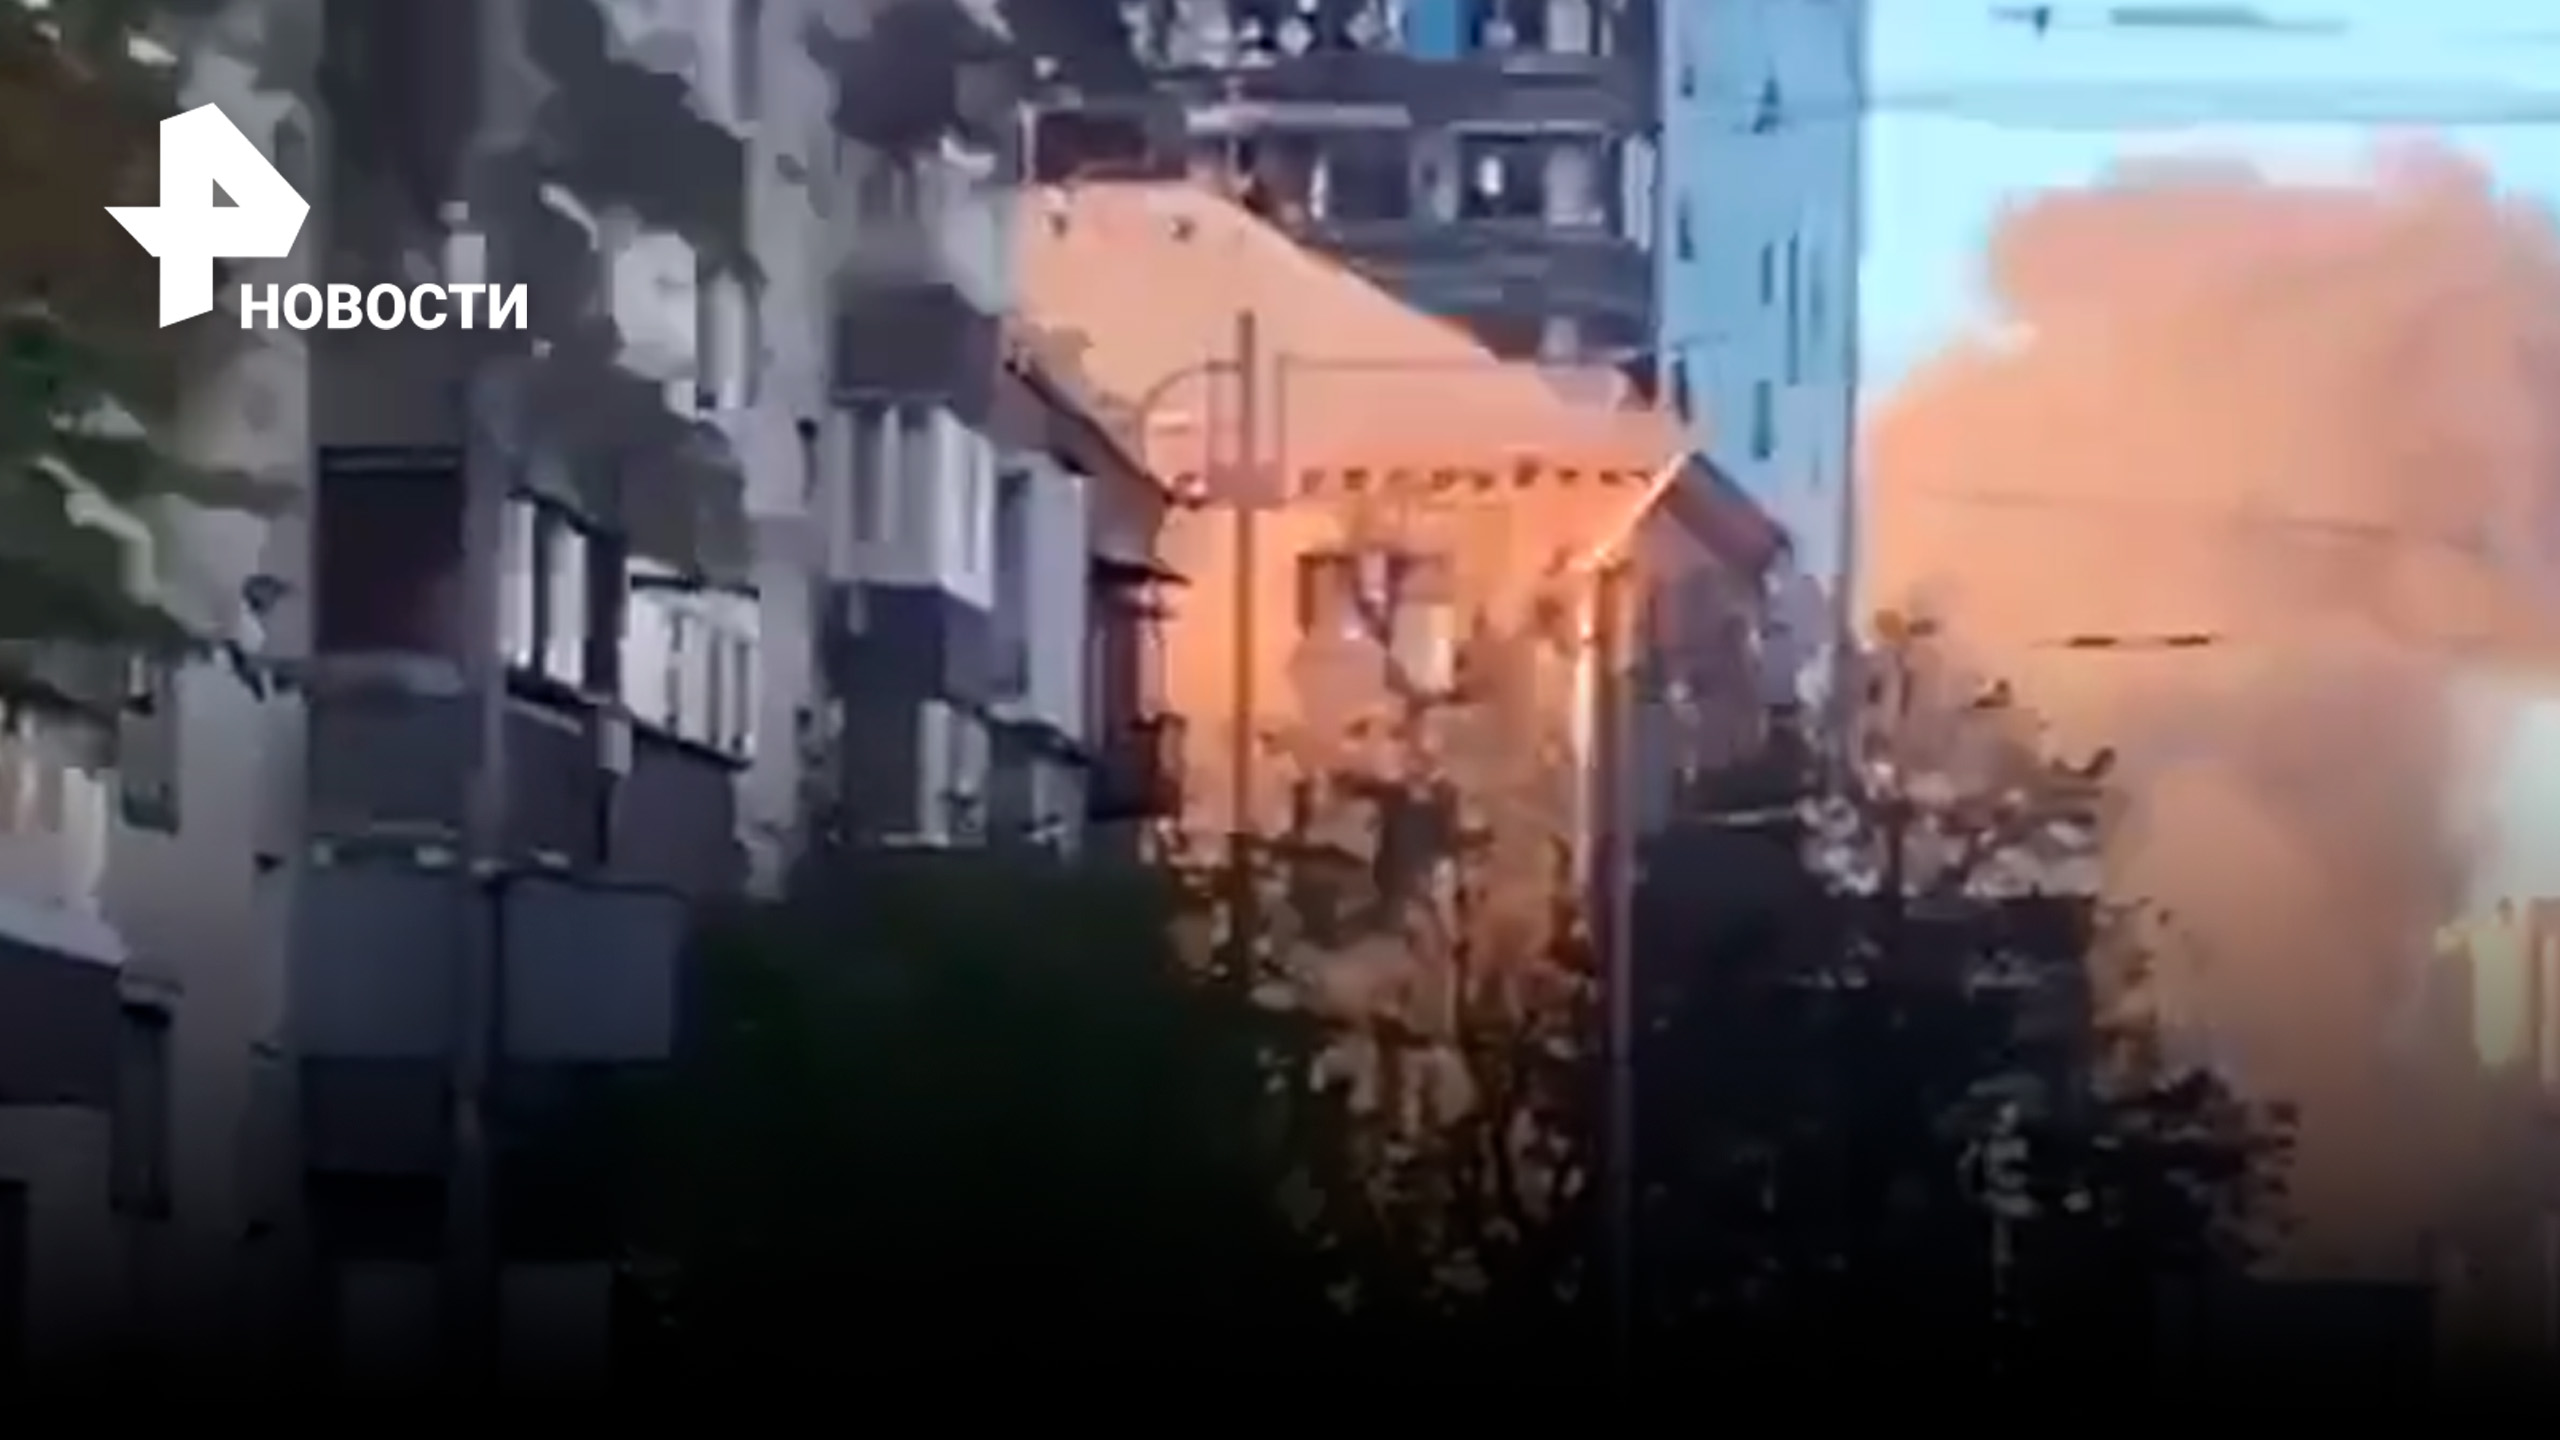 За 30 секунд до взрыва: крики, мат и неразбериха - как в Киеве пытались сбить дрон / РЕН Новости